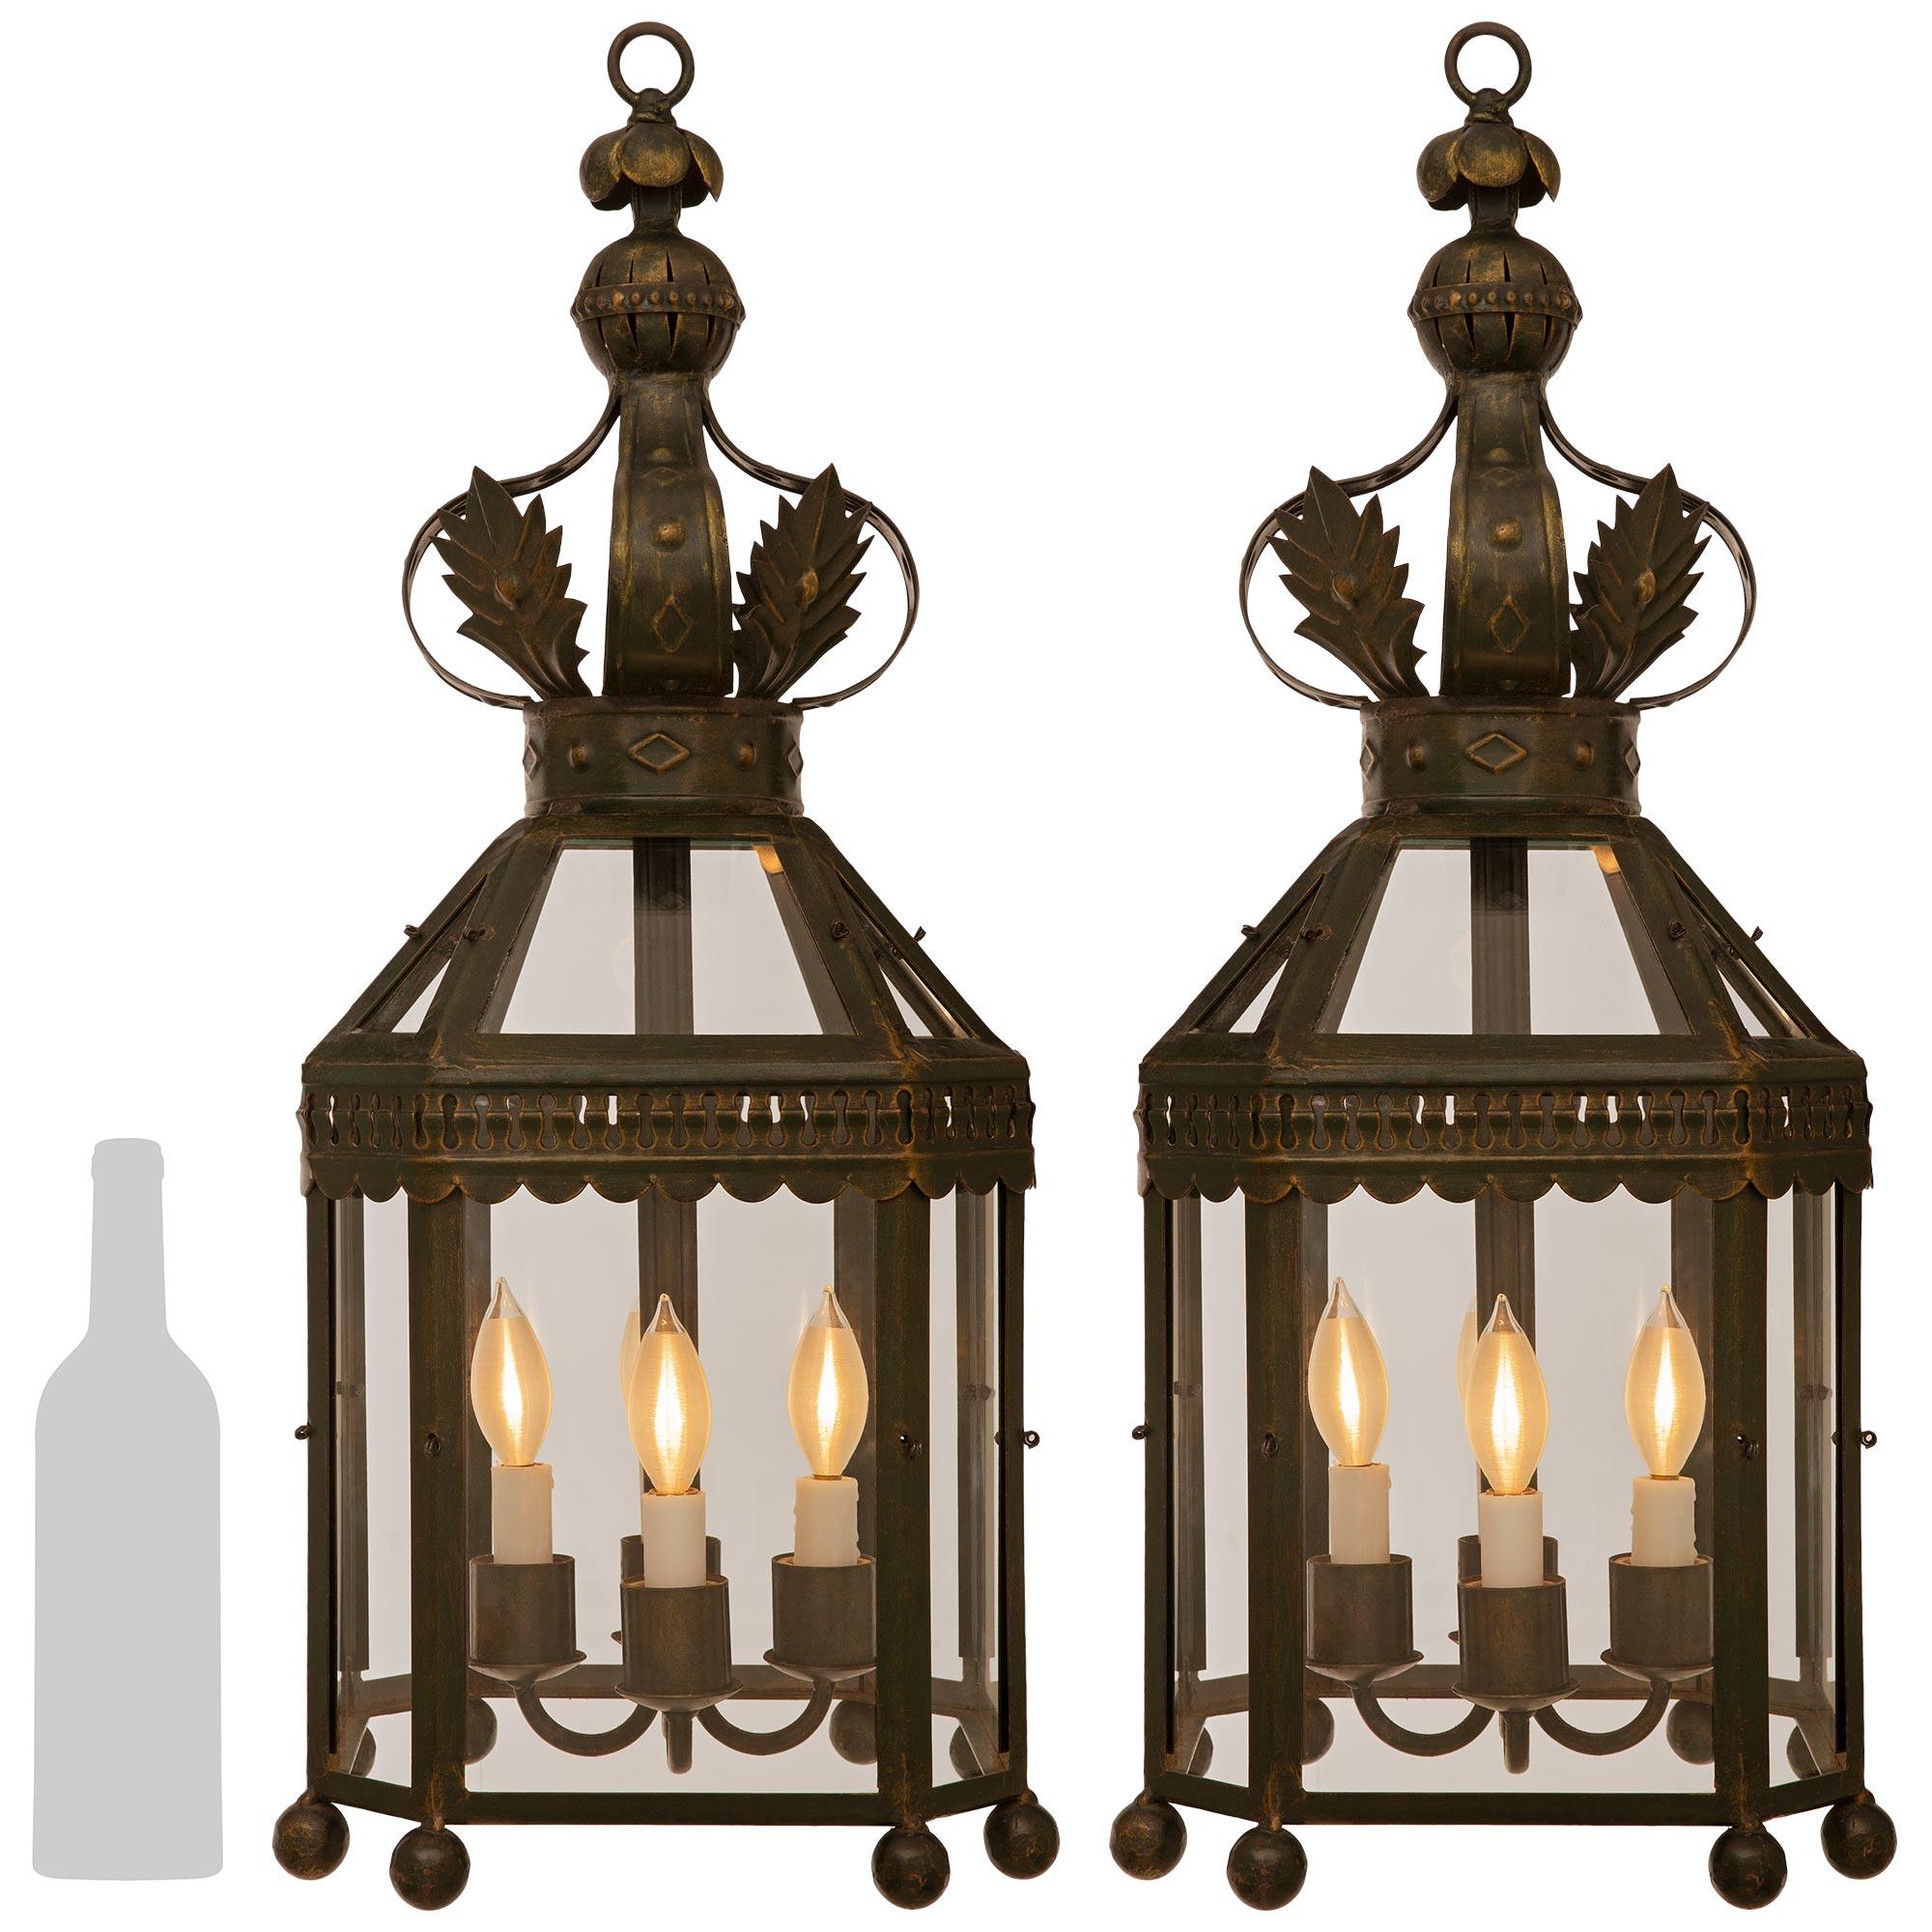 Un bel ensemble de quatre lanternes en fer forgé de style Louis XVI du début du siècle. Chaque lanterne octogonale à quatre bras et quatre lumières se compose d'une cage à huit côtés avec des sphères inférieures sous chaque coin. Le long du bord